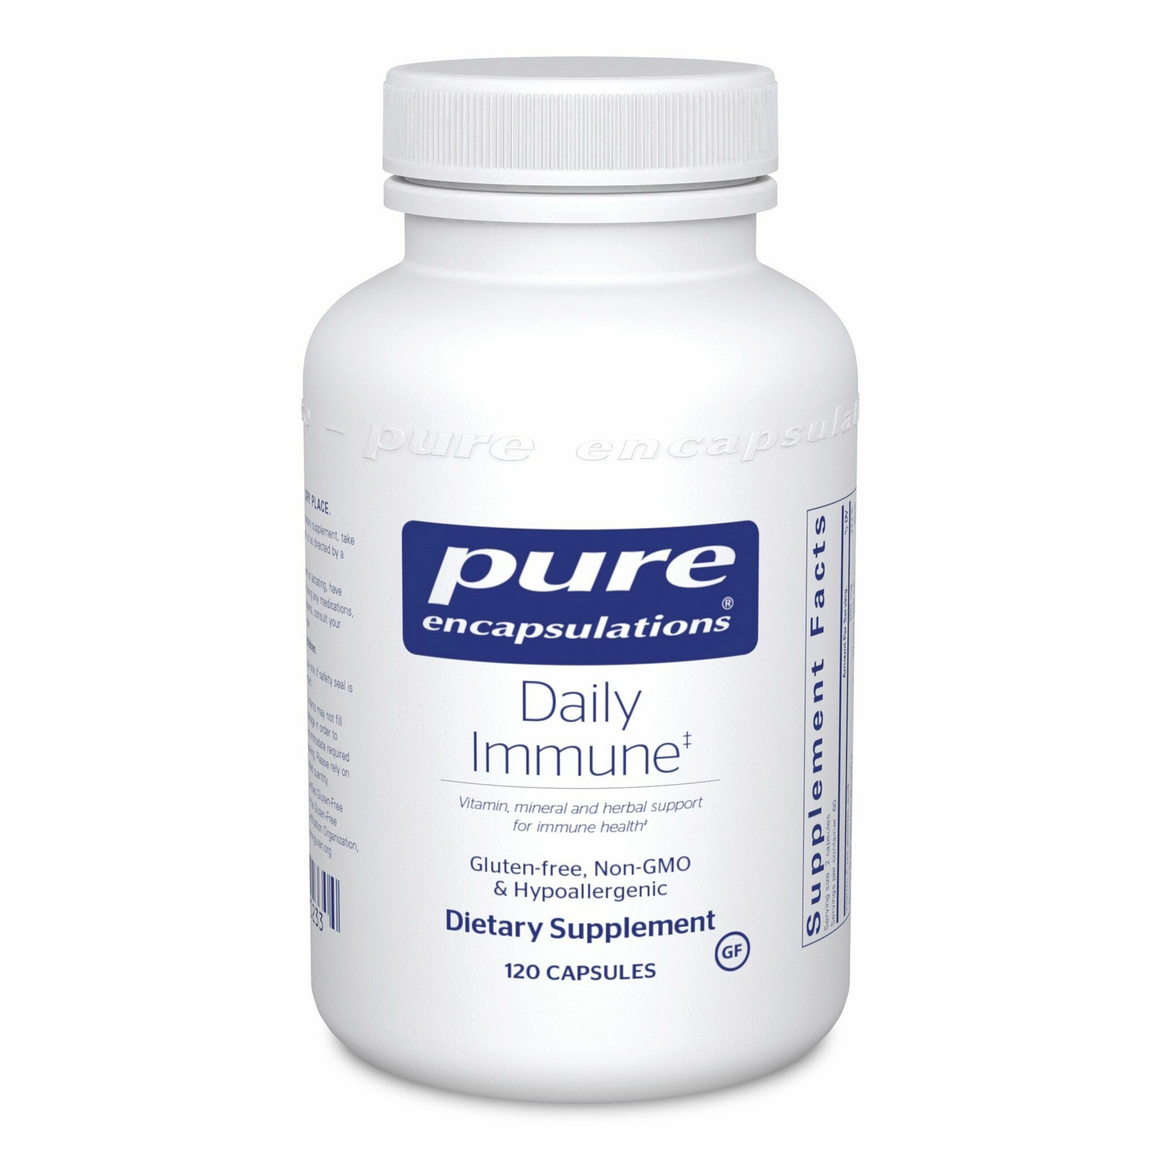 Daily Immune - Pure Encapsulations - 120 capsules